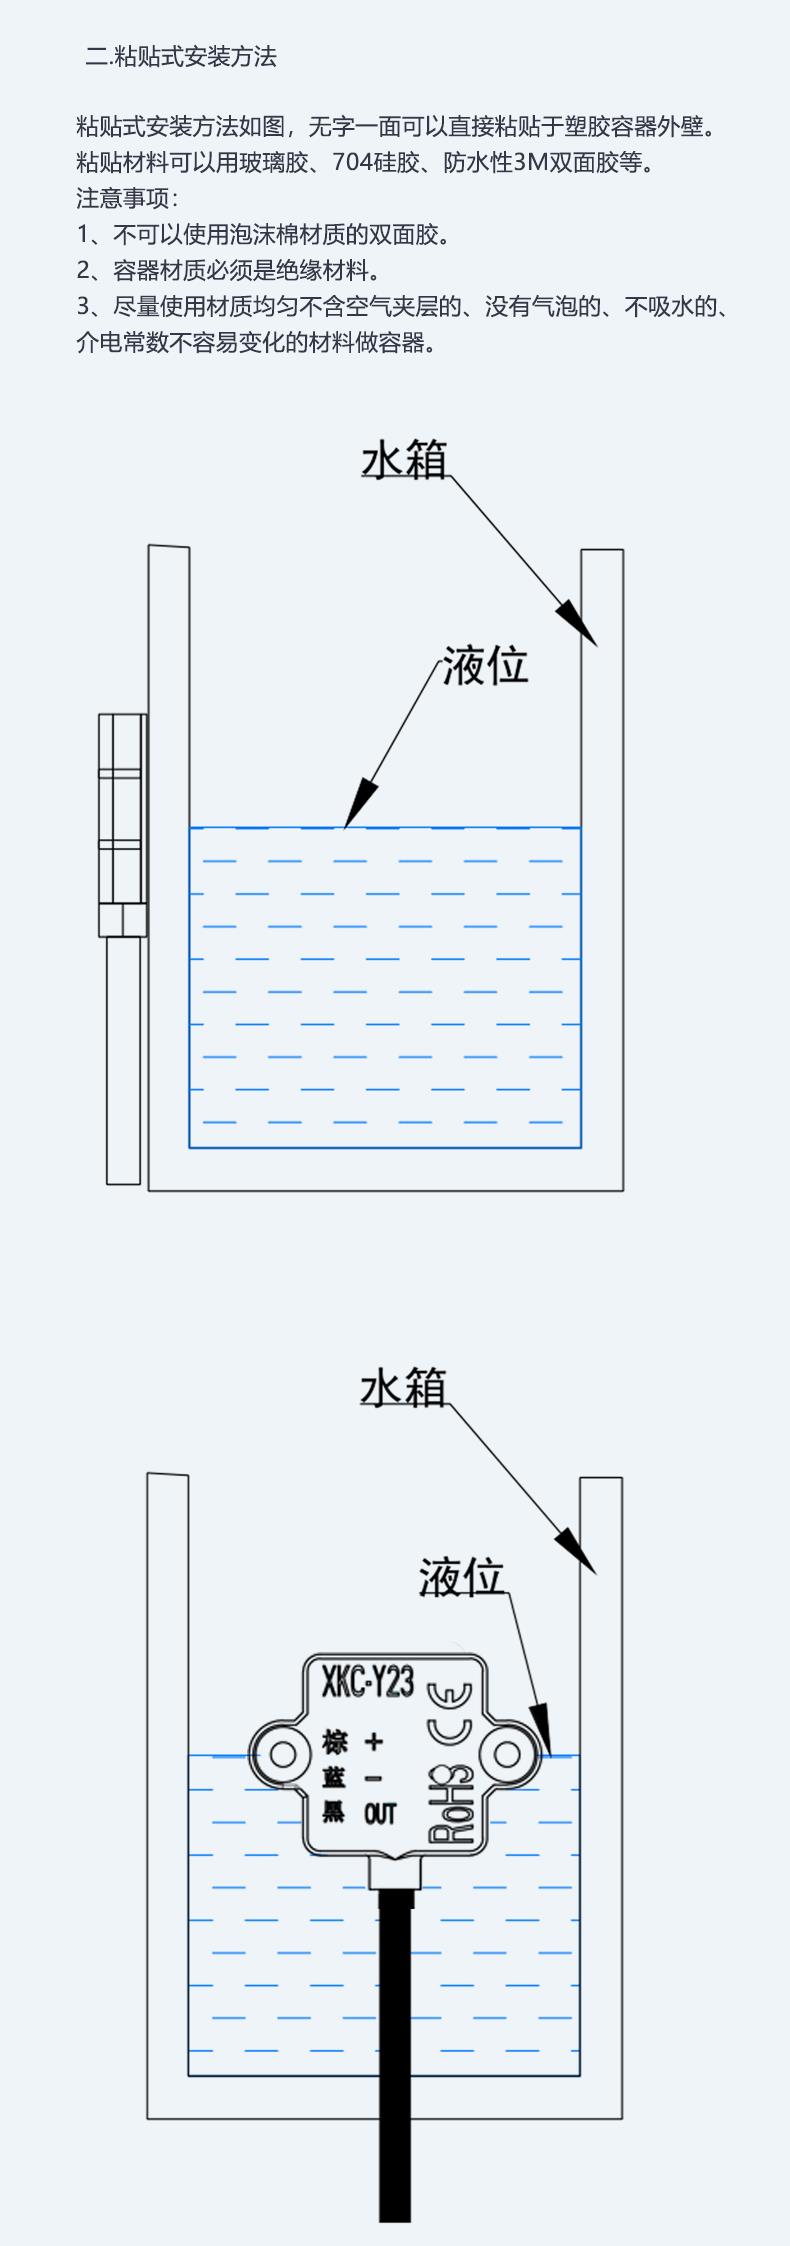 水位传感器图例